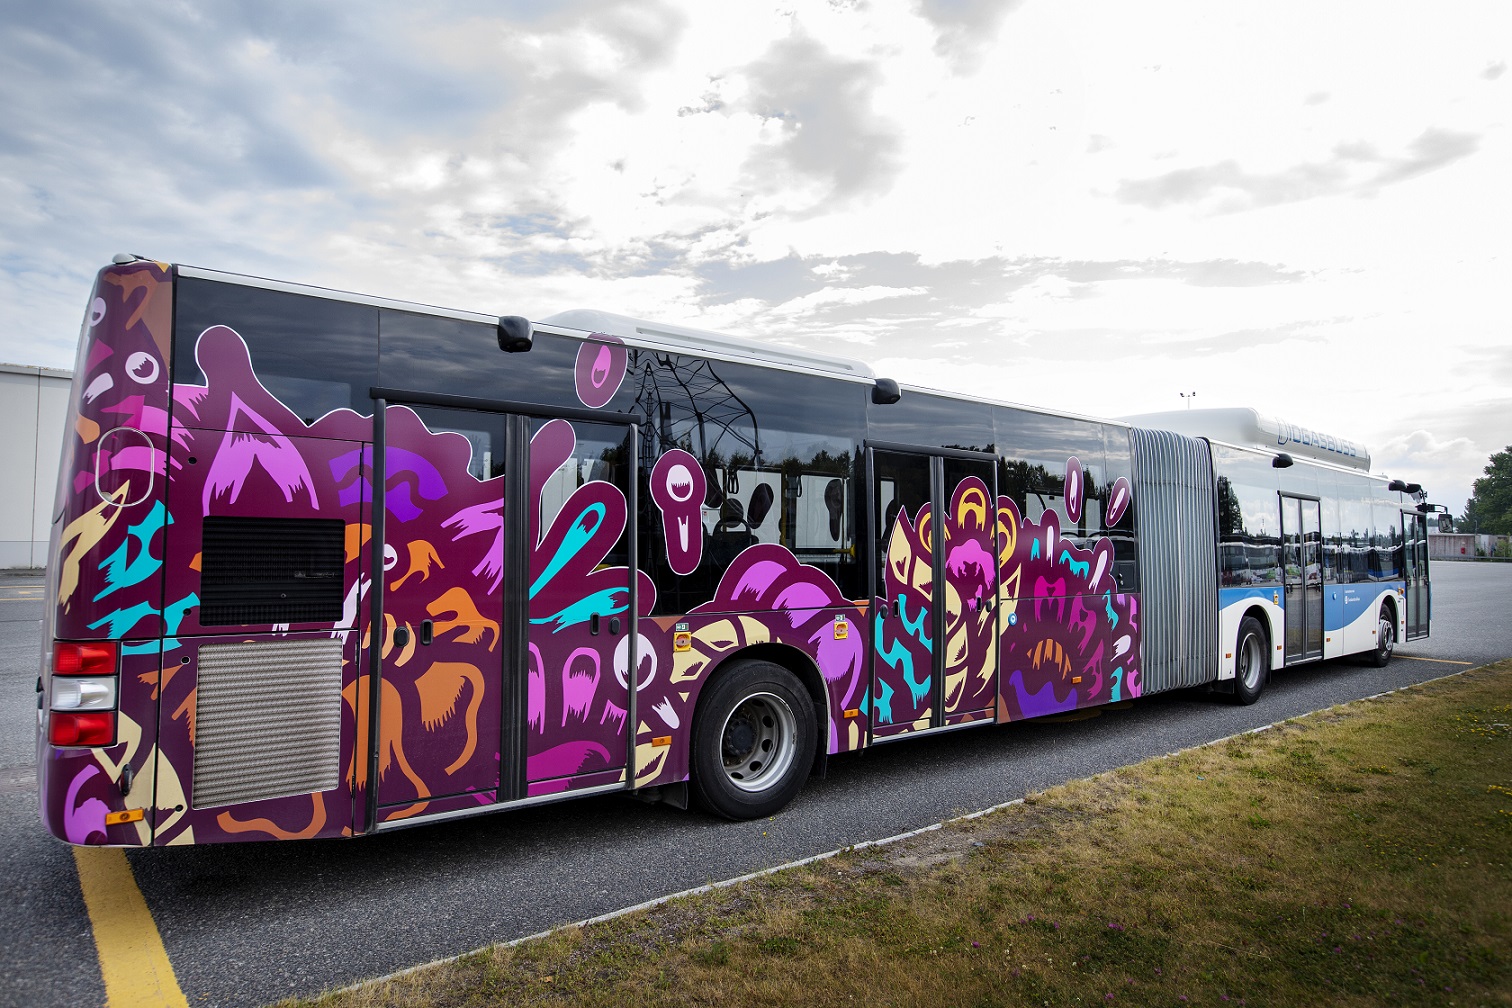 Konstverk I blom som placerats på bak på en buss med lila och blommor